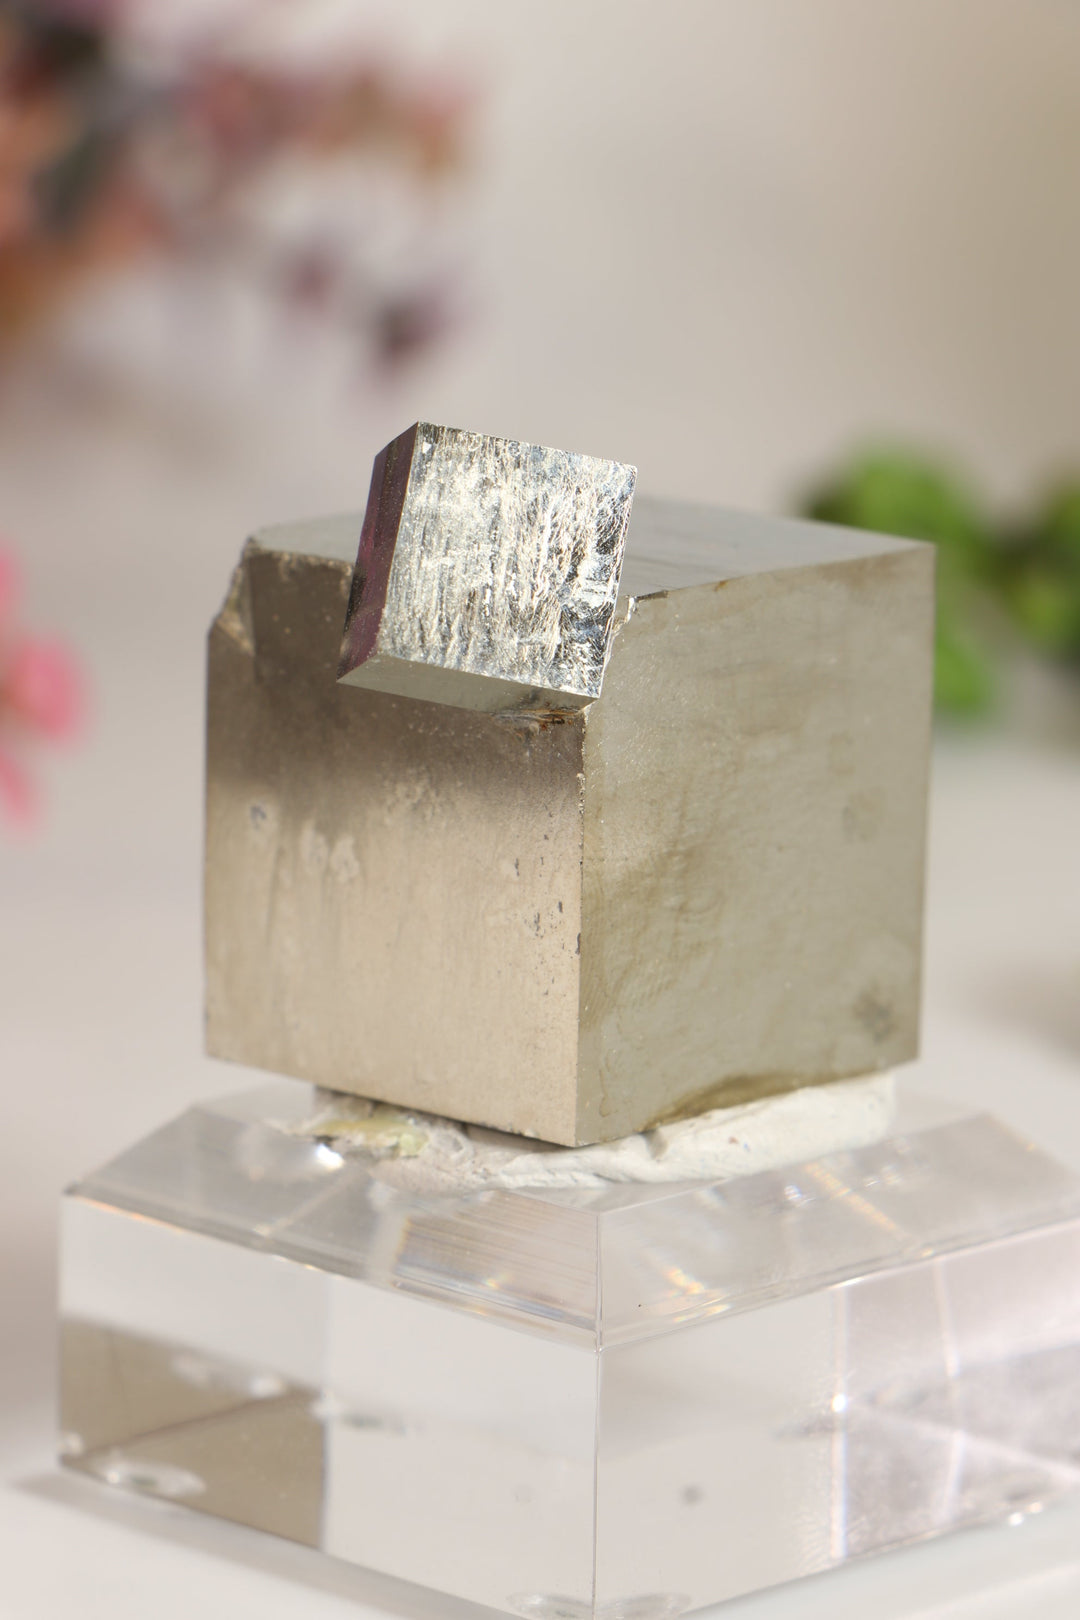 Spanish Pyrite Cube TU461